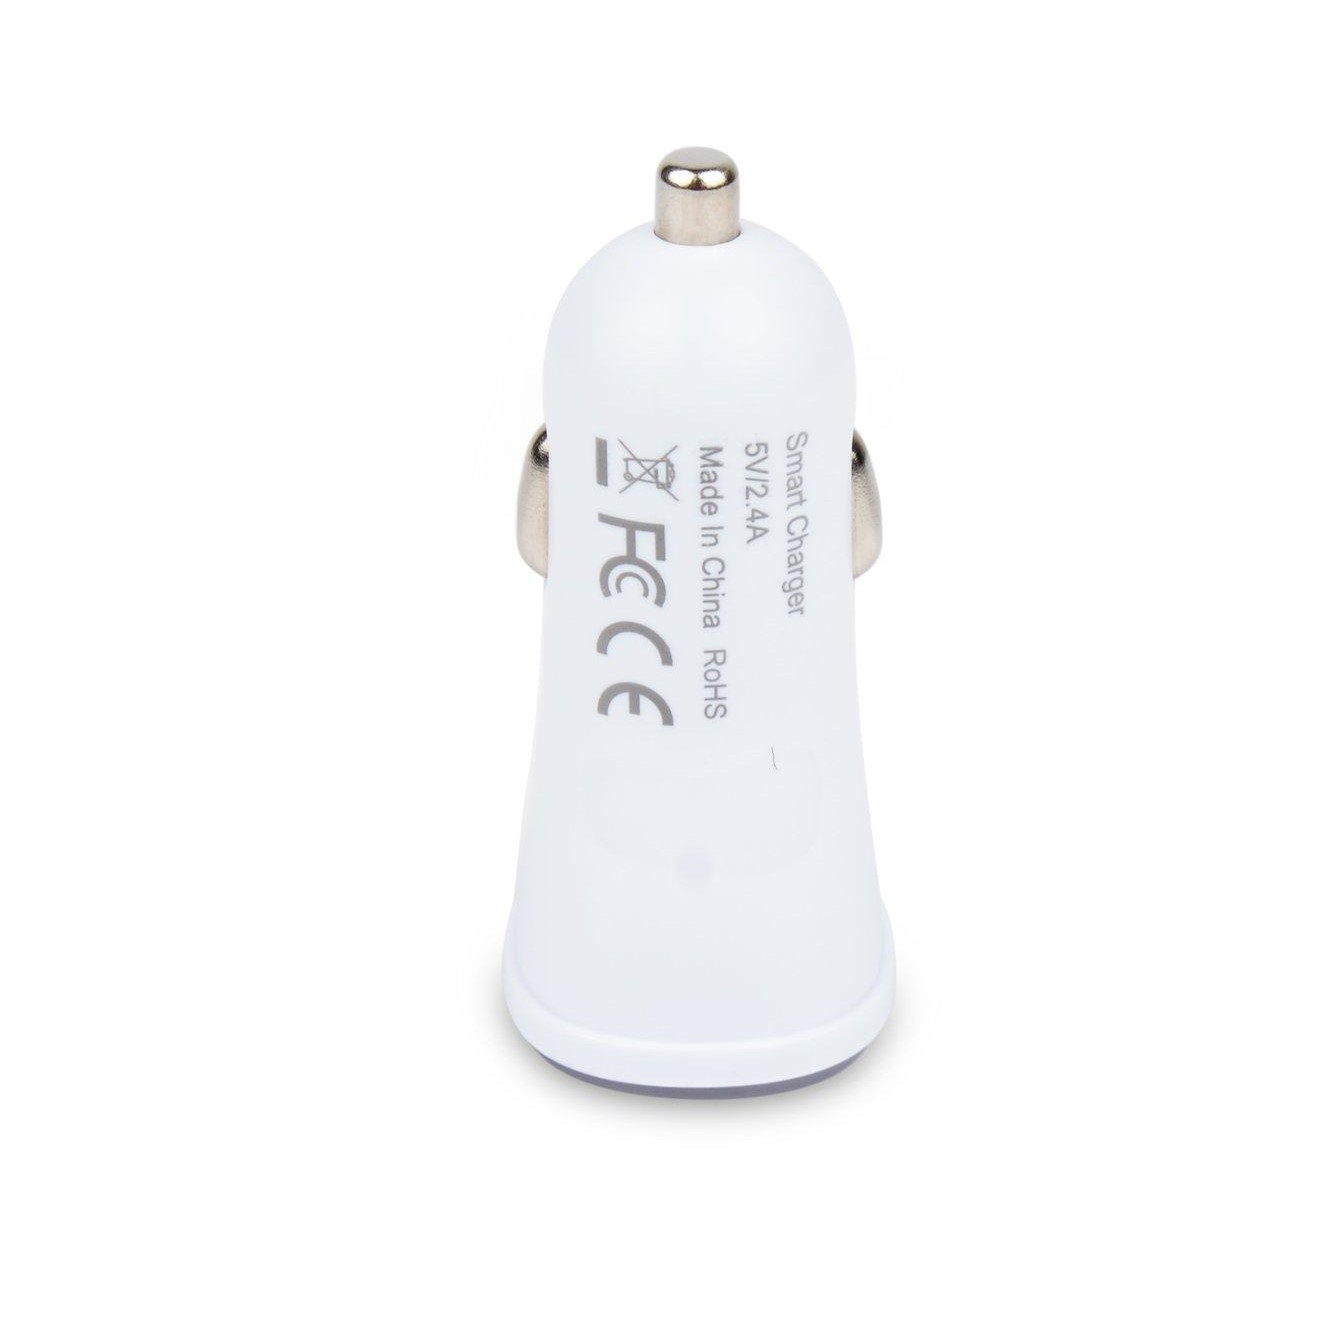 Autoladegerät Doppel-USB-Anschlüsse LED Autoladegerät - Universal, 5V INF 2.4A med weiß /